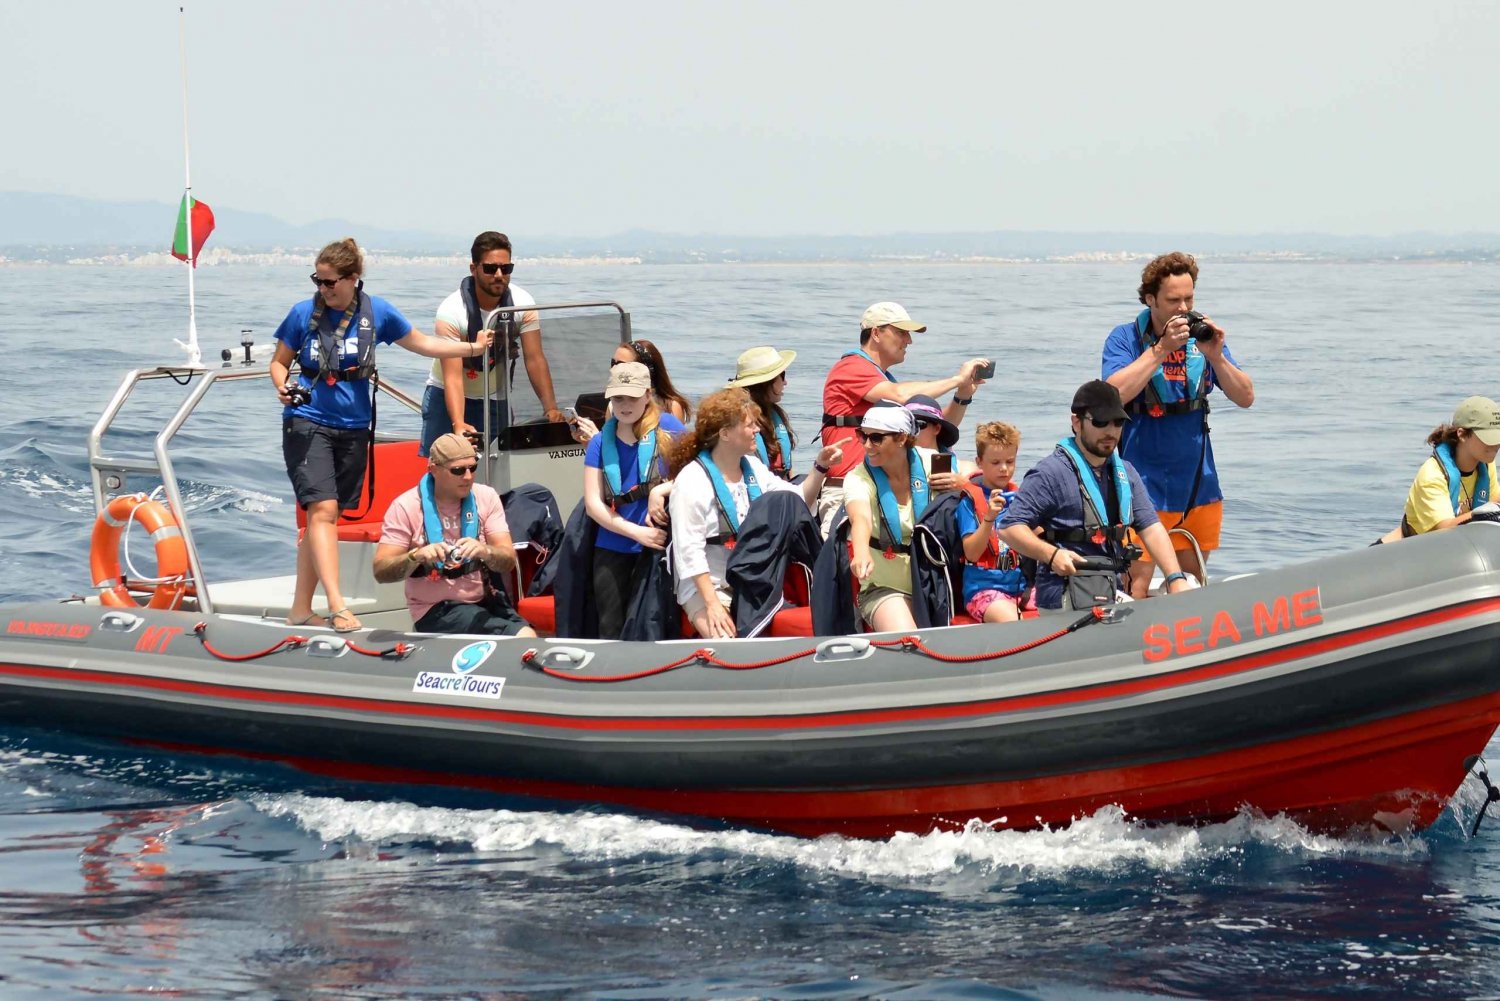 Albufeira: Delfinskådning och båtkryssning i Benagilgrottan